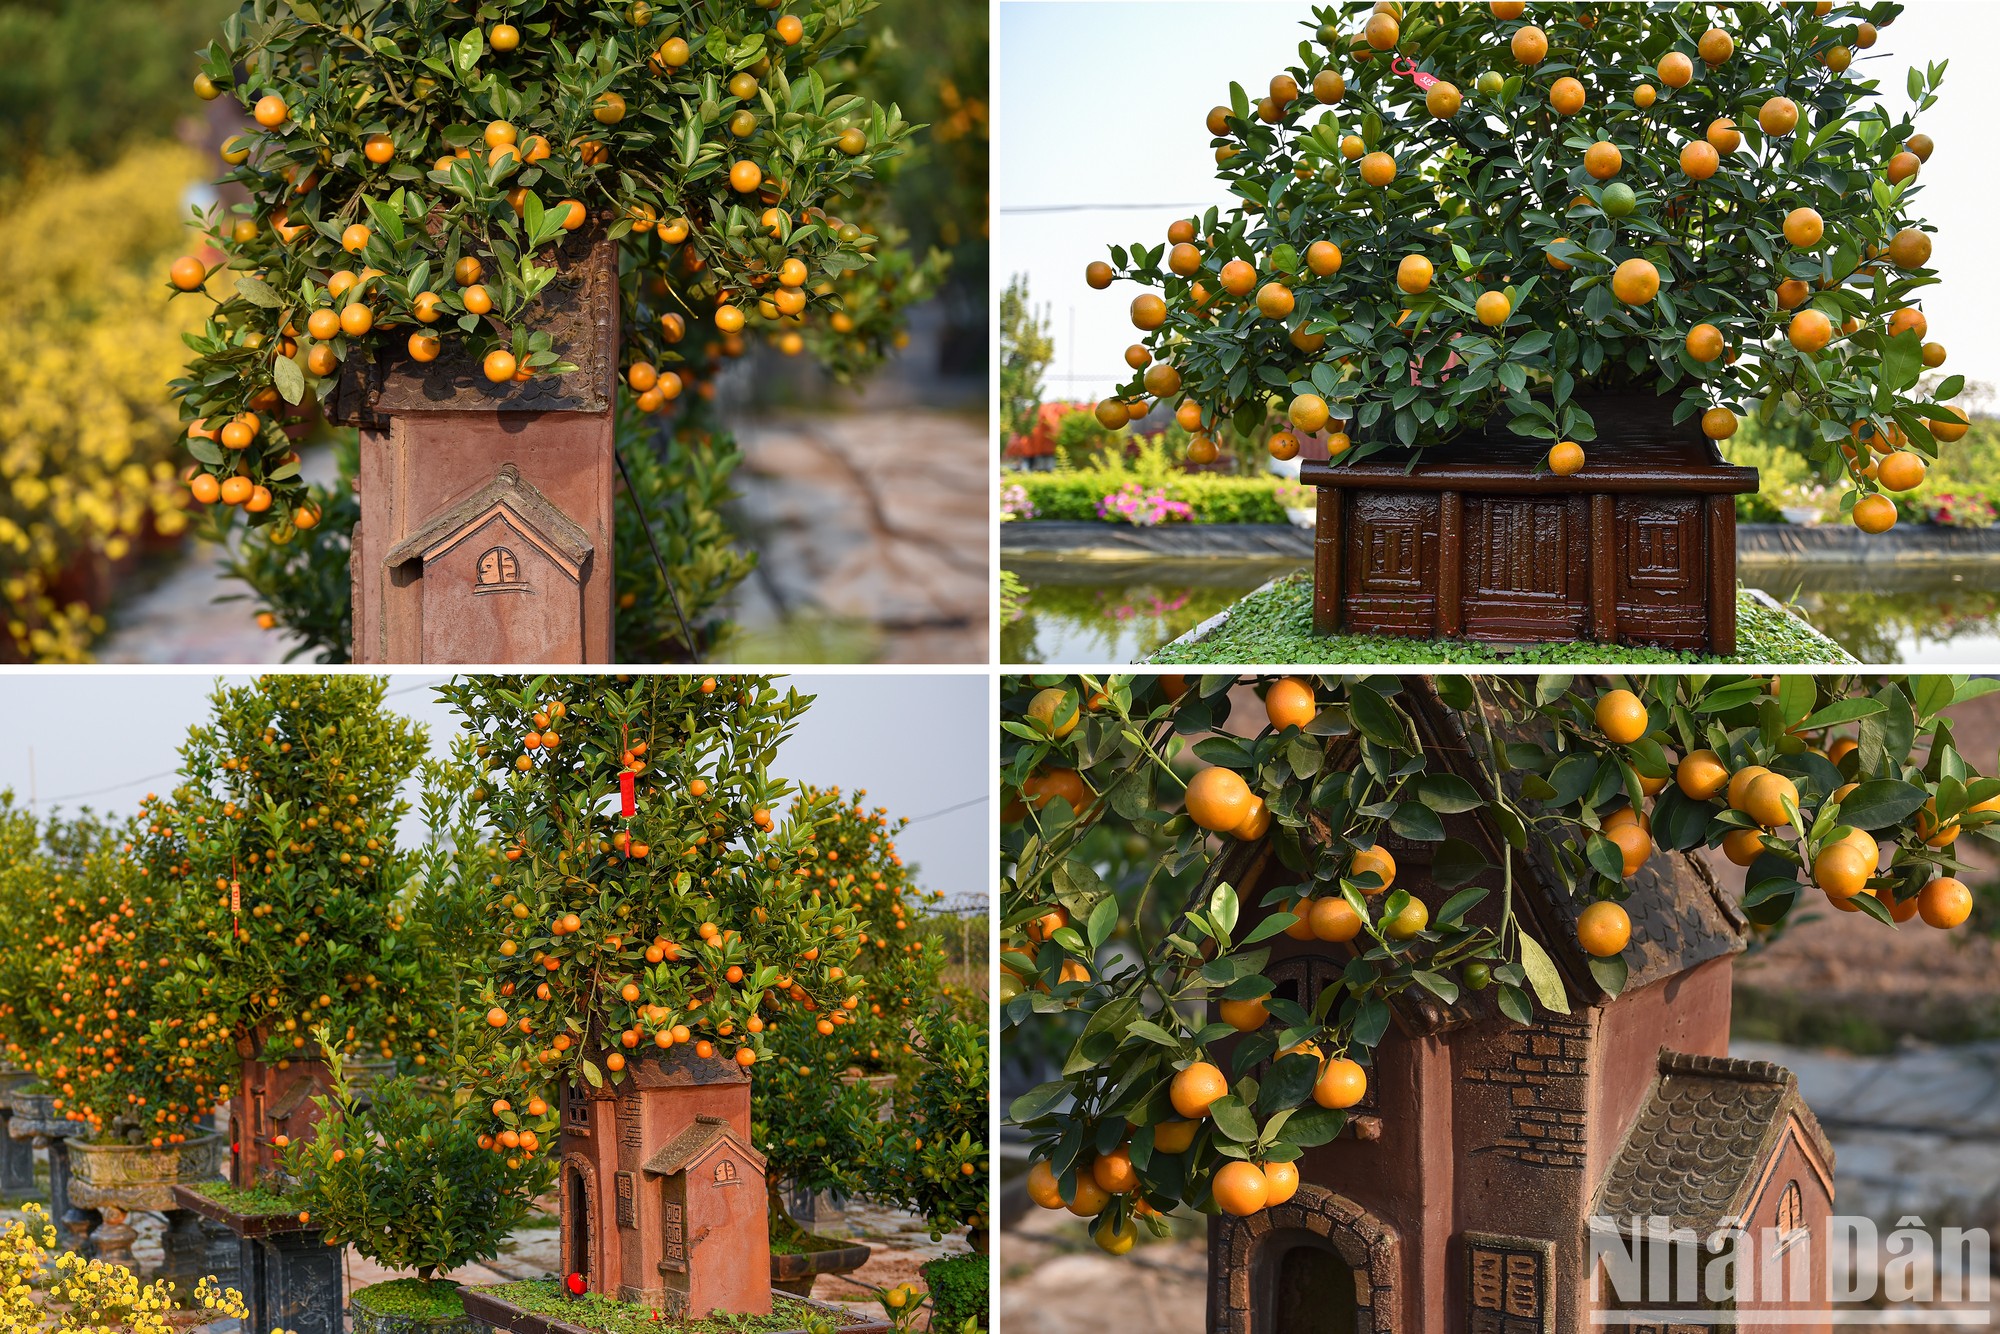 Por estos días, los jardines de kumquat en la aldea de Tu Lien, en Hanói, están listos para brindar una atmósfera festiva a los hogares de los vietnamitas en ocasión del Año Nuevo Lunar (Tet).